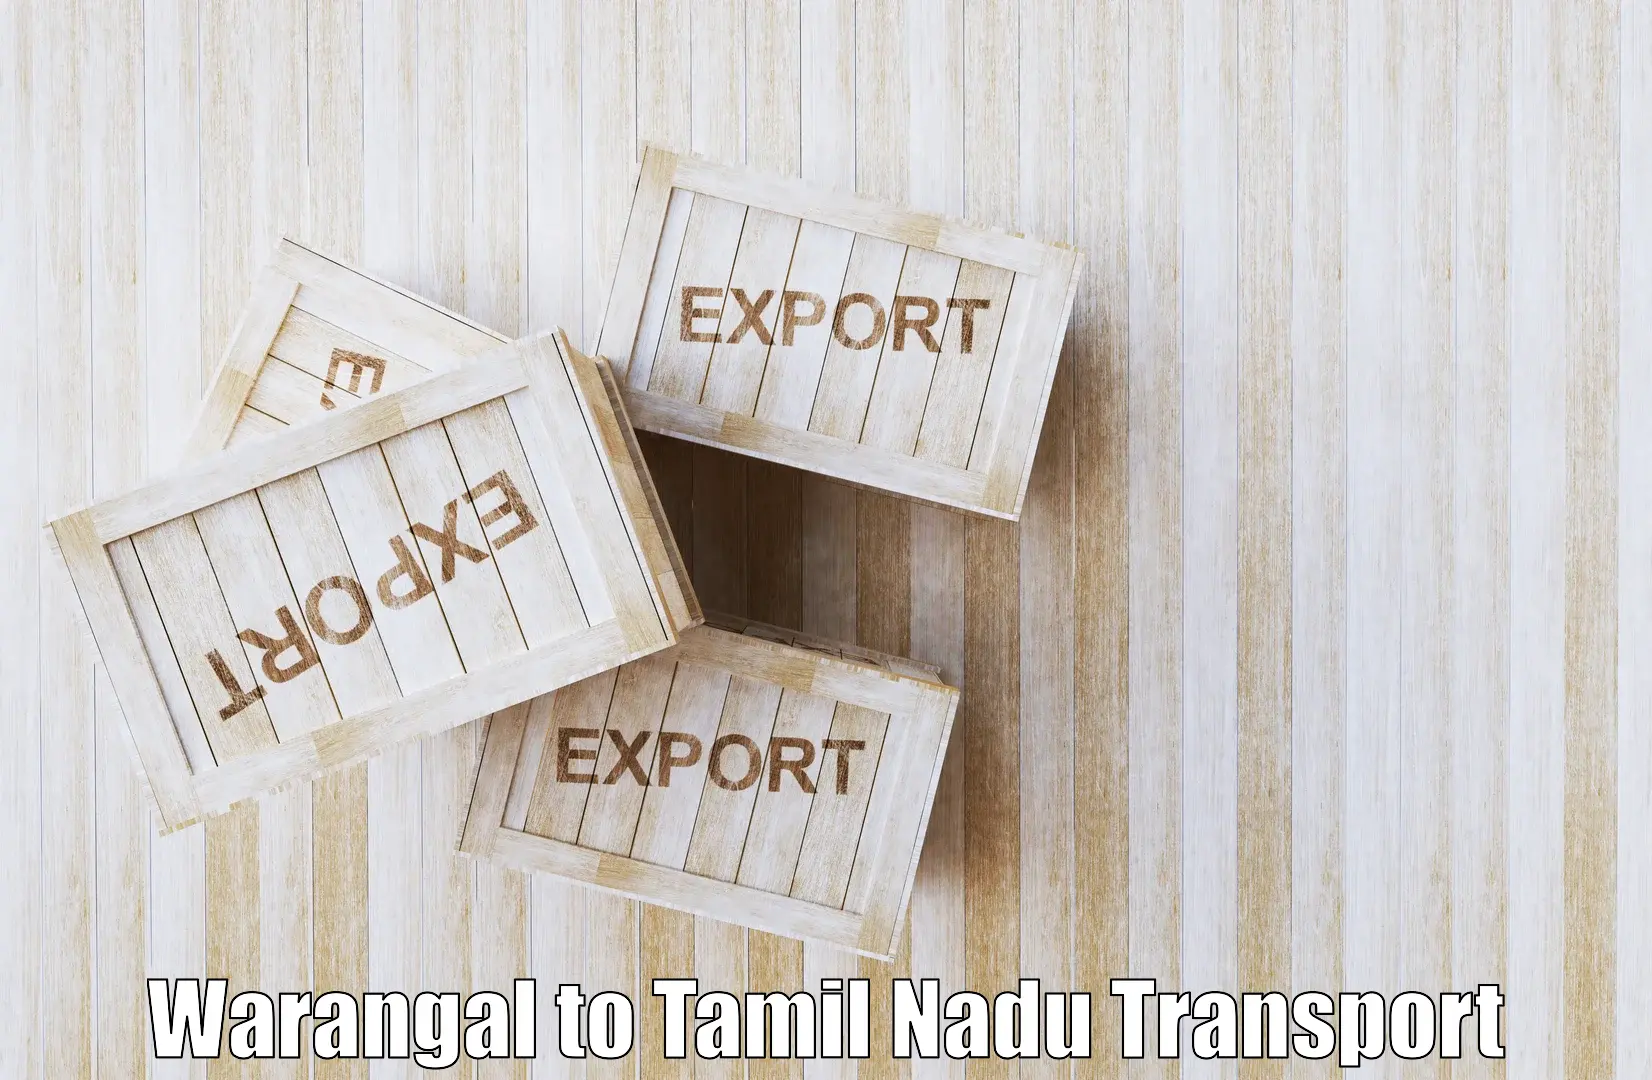 Transport services Warangal to Perambalur